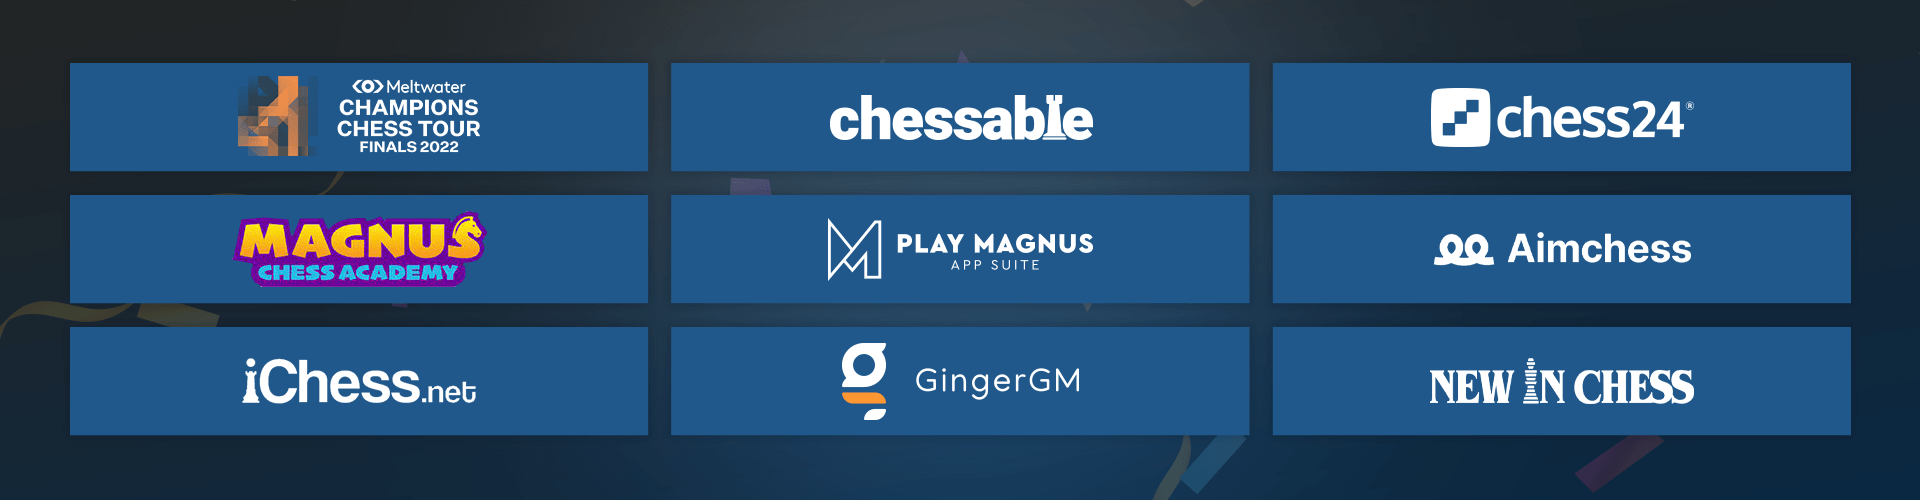 Chess.com @Chess.com en Español #chesstiktok #magnuscarlsen